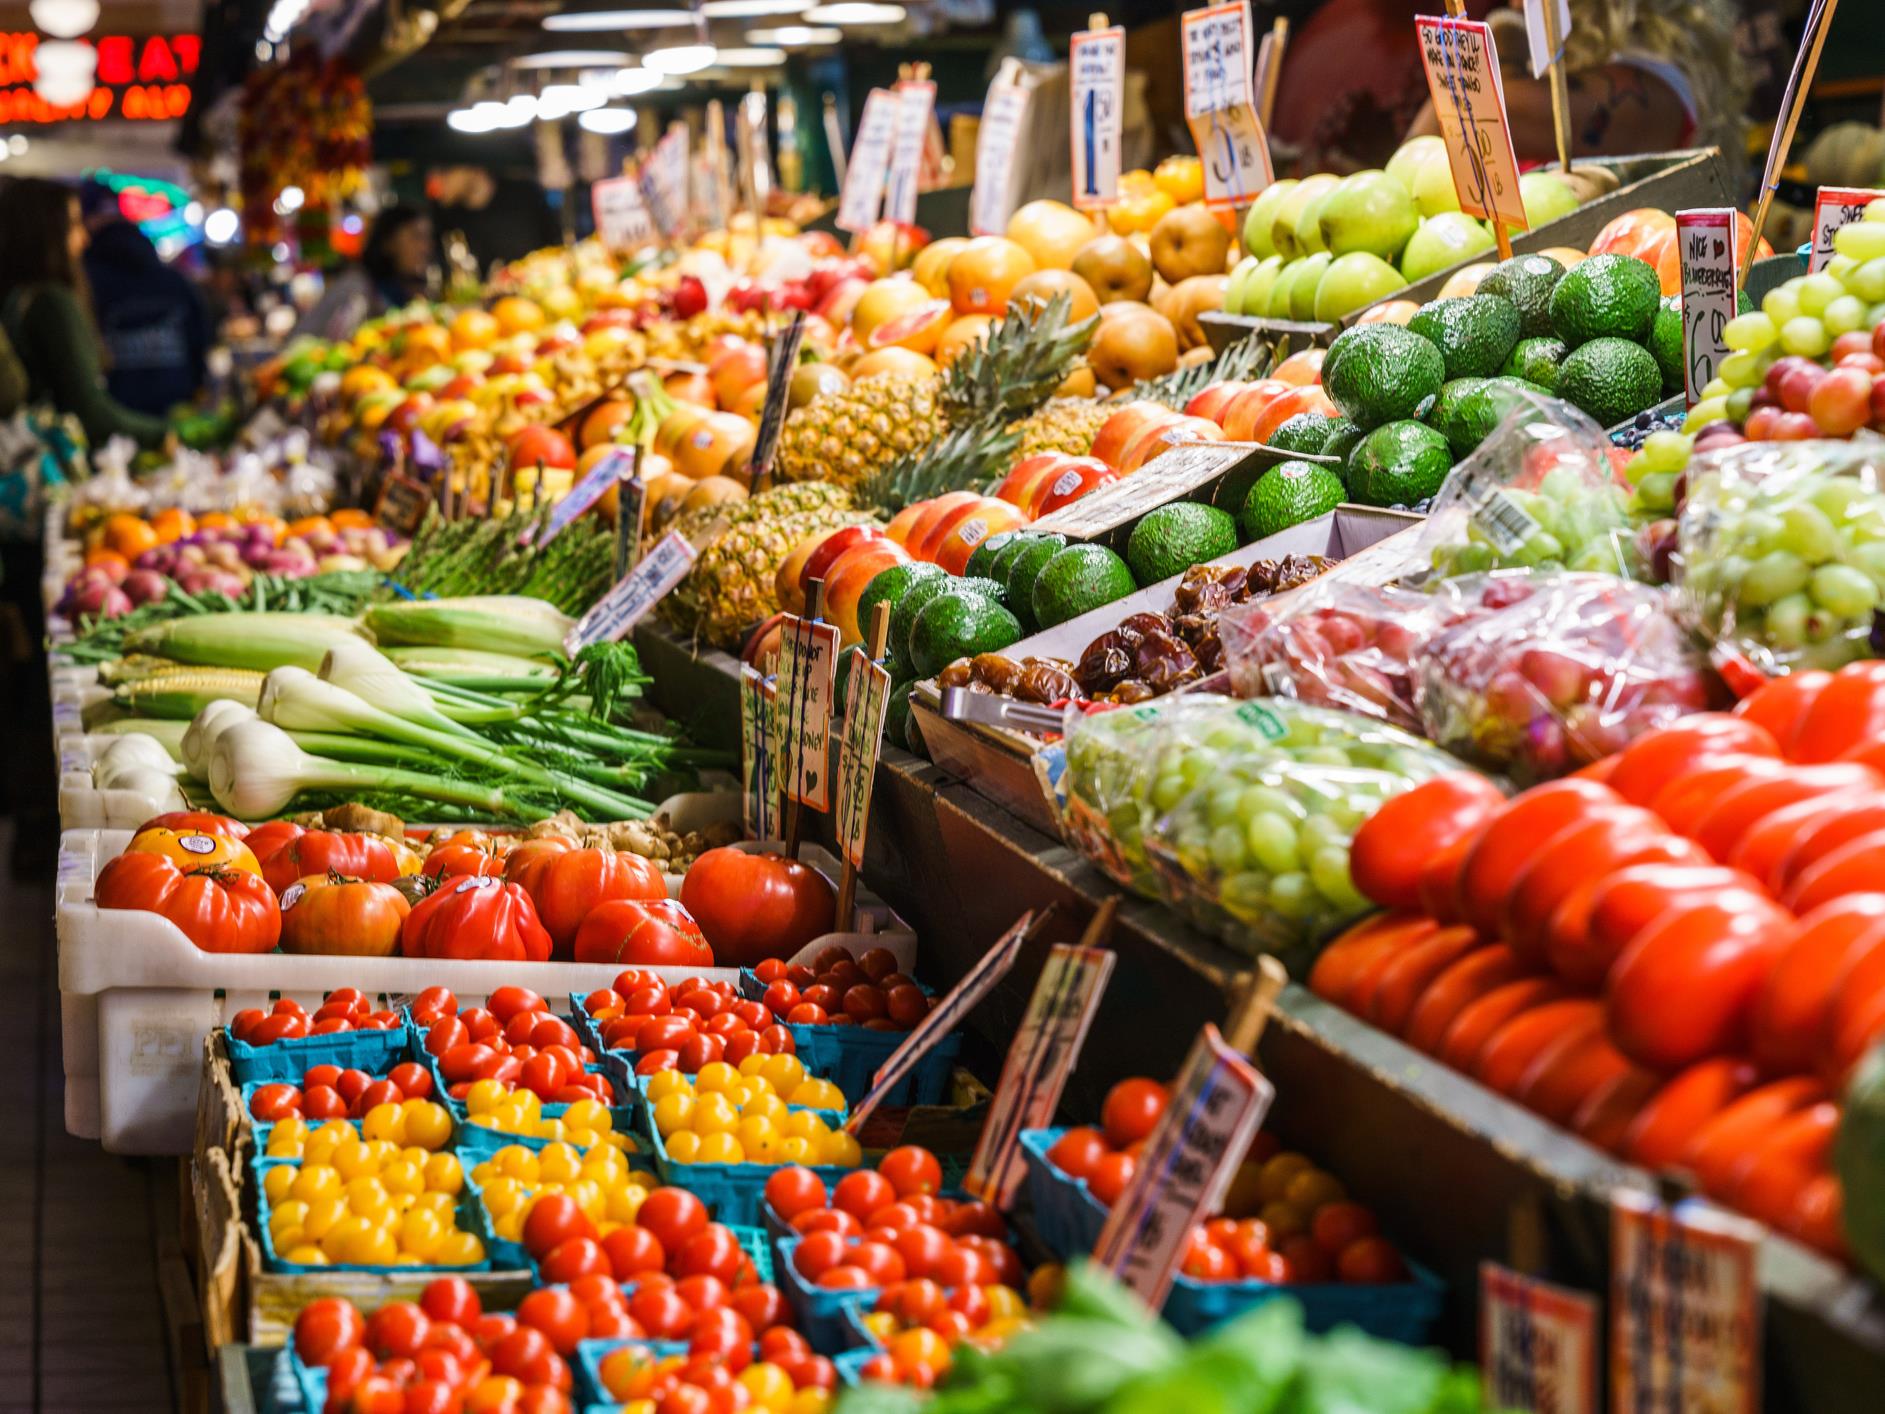 Comment payer les fruits et légumes moins cher?